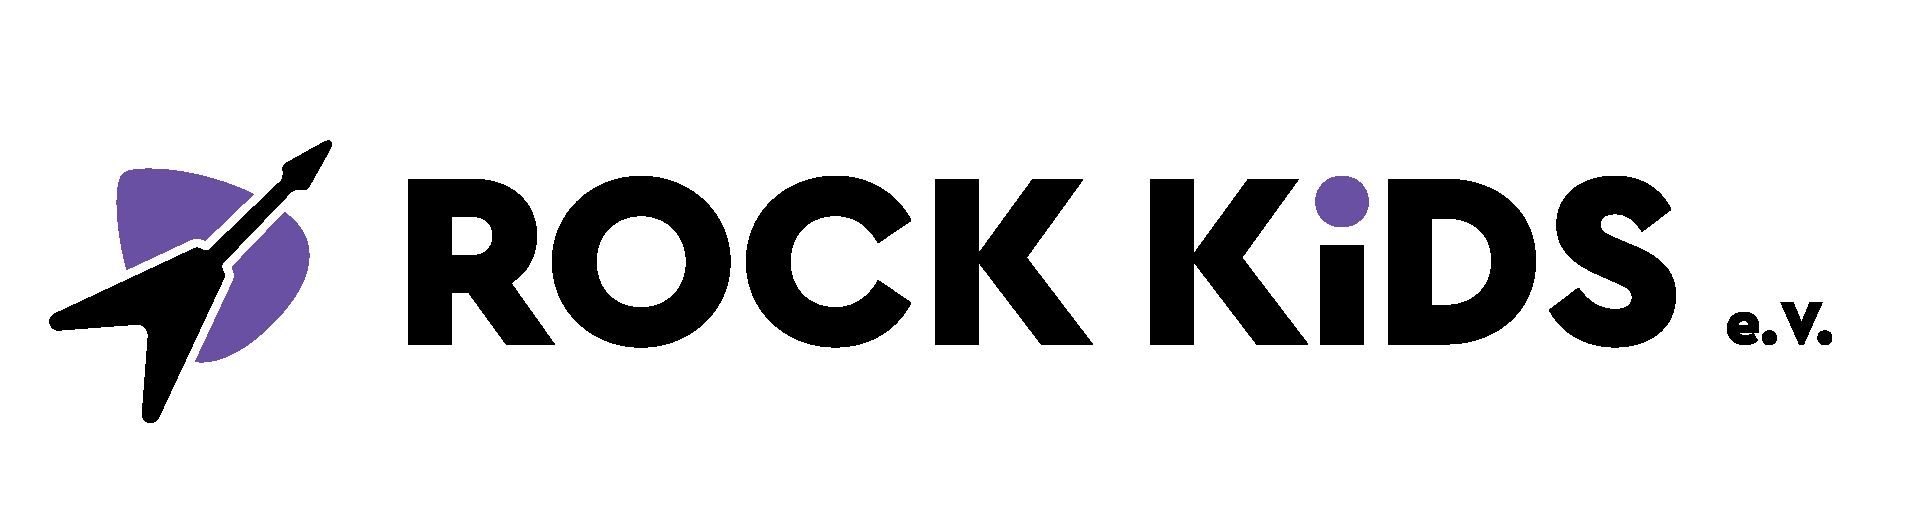 ROCK KIDS e.V. logo